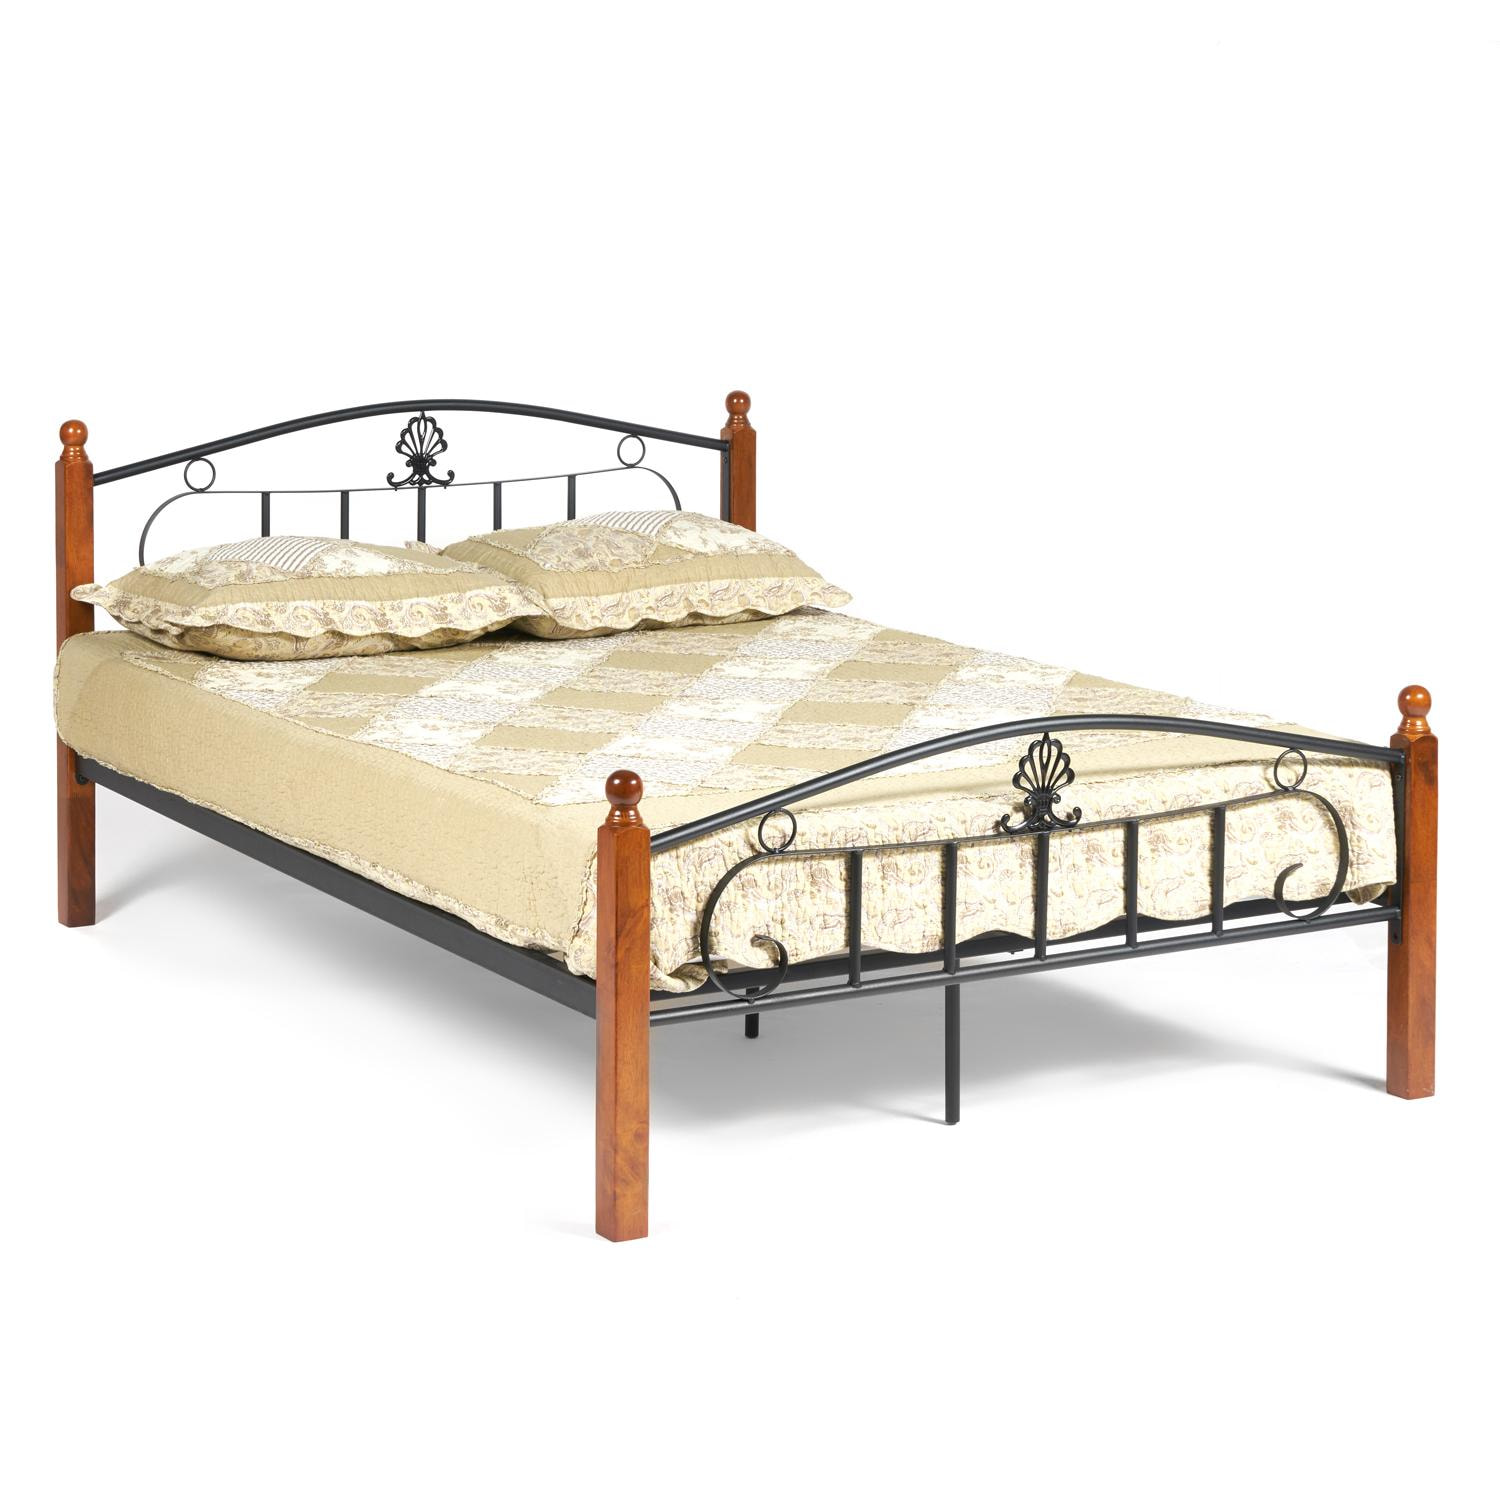 Кровать РУМБА (AT-203)/ RUMBA Wood slat base дерево гевея/металл, 140*200 см (Double bed), красный дуб/черный